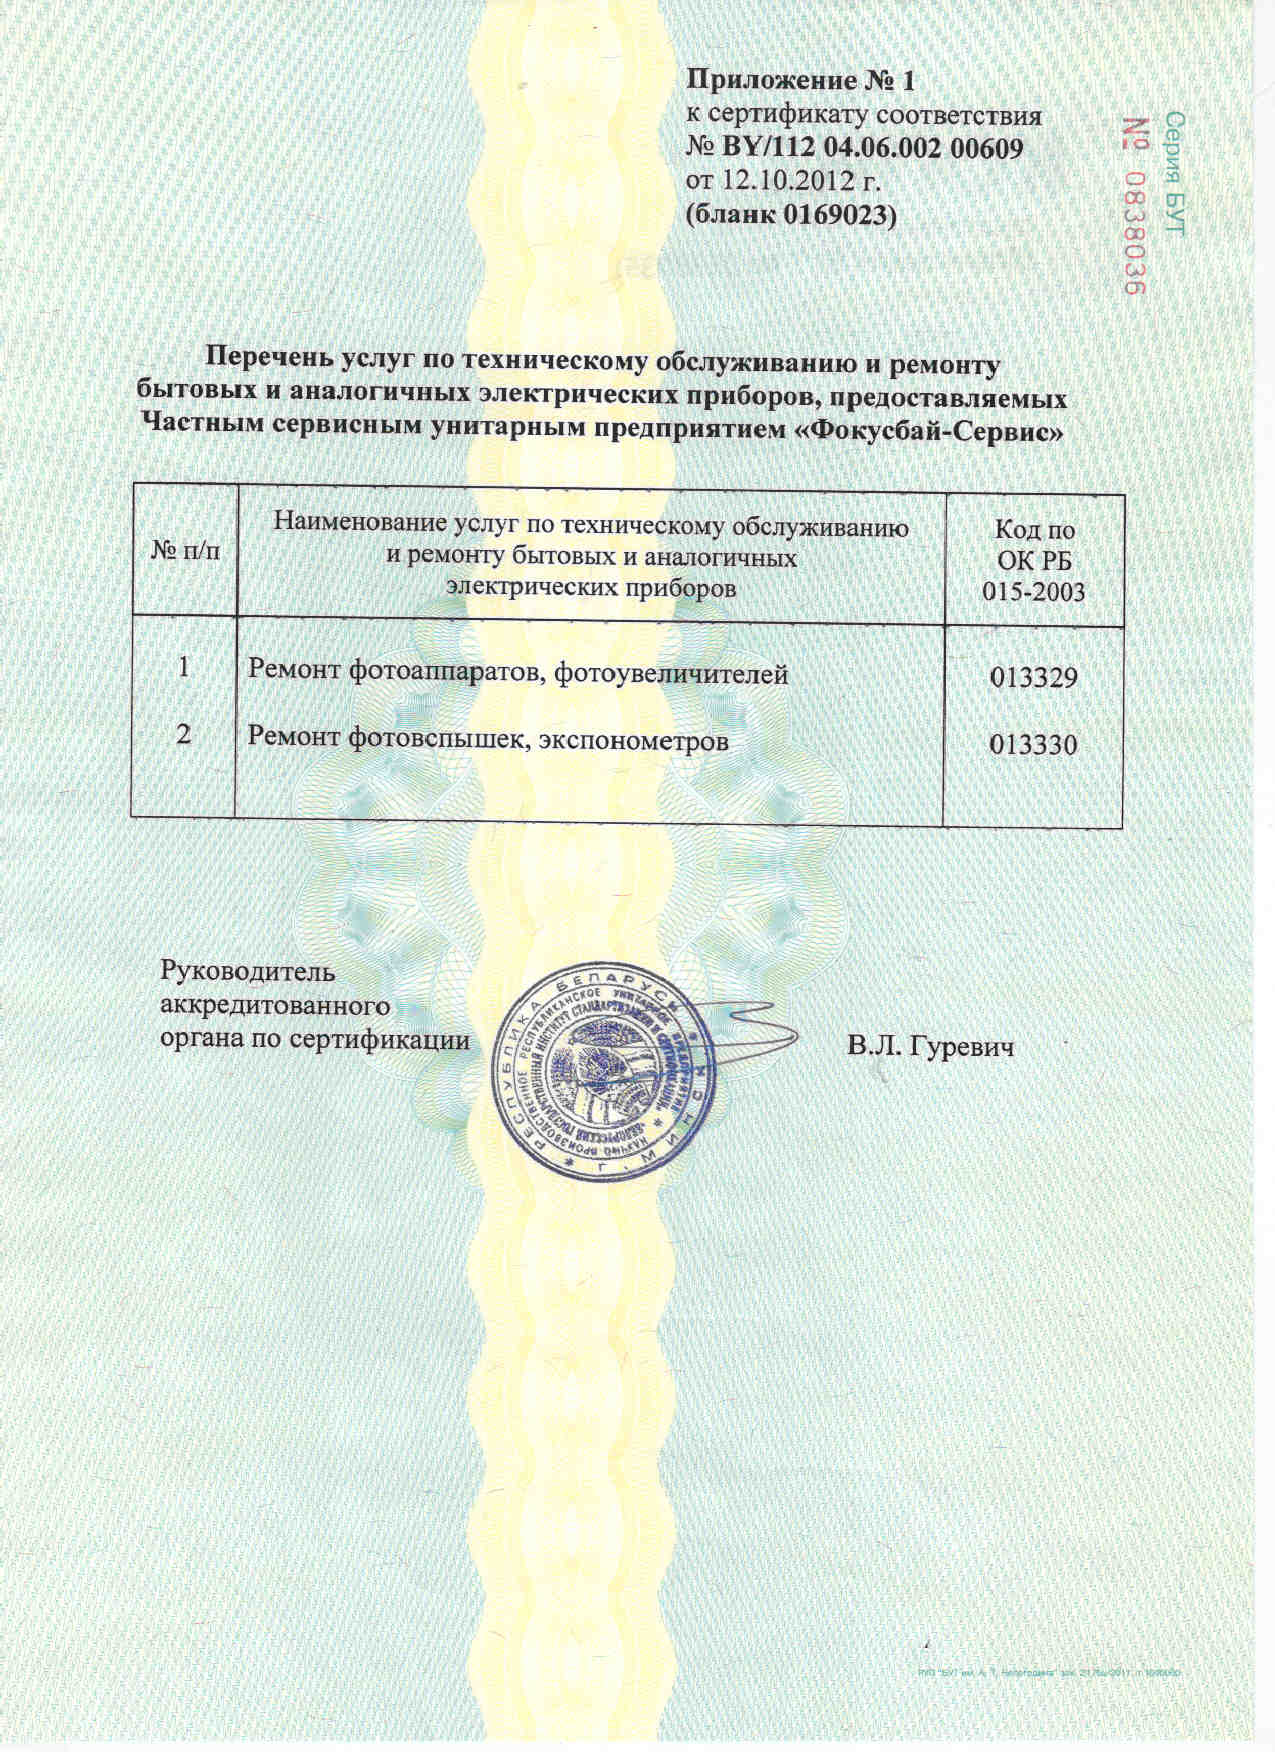 Сертификат соответствия на оказание услуг по техническому обслуживанию и ремонту фотоаппаратов, фотоувеличителей, фотовспышек, экспонометров требованиям СТБ 1365-2002